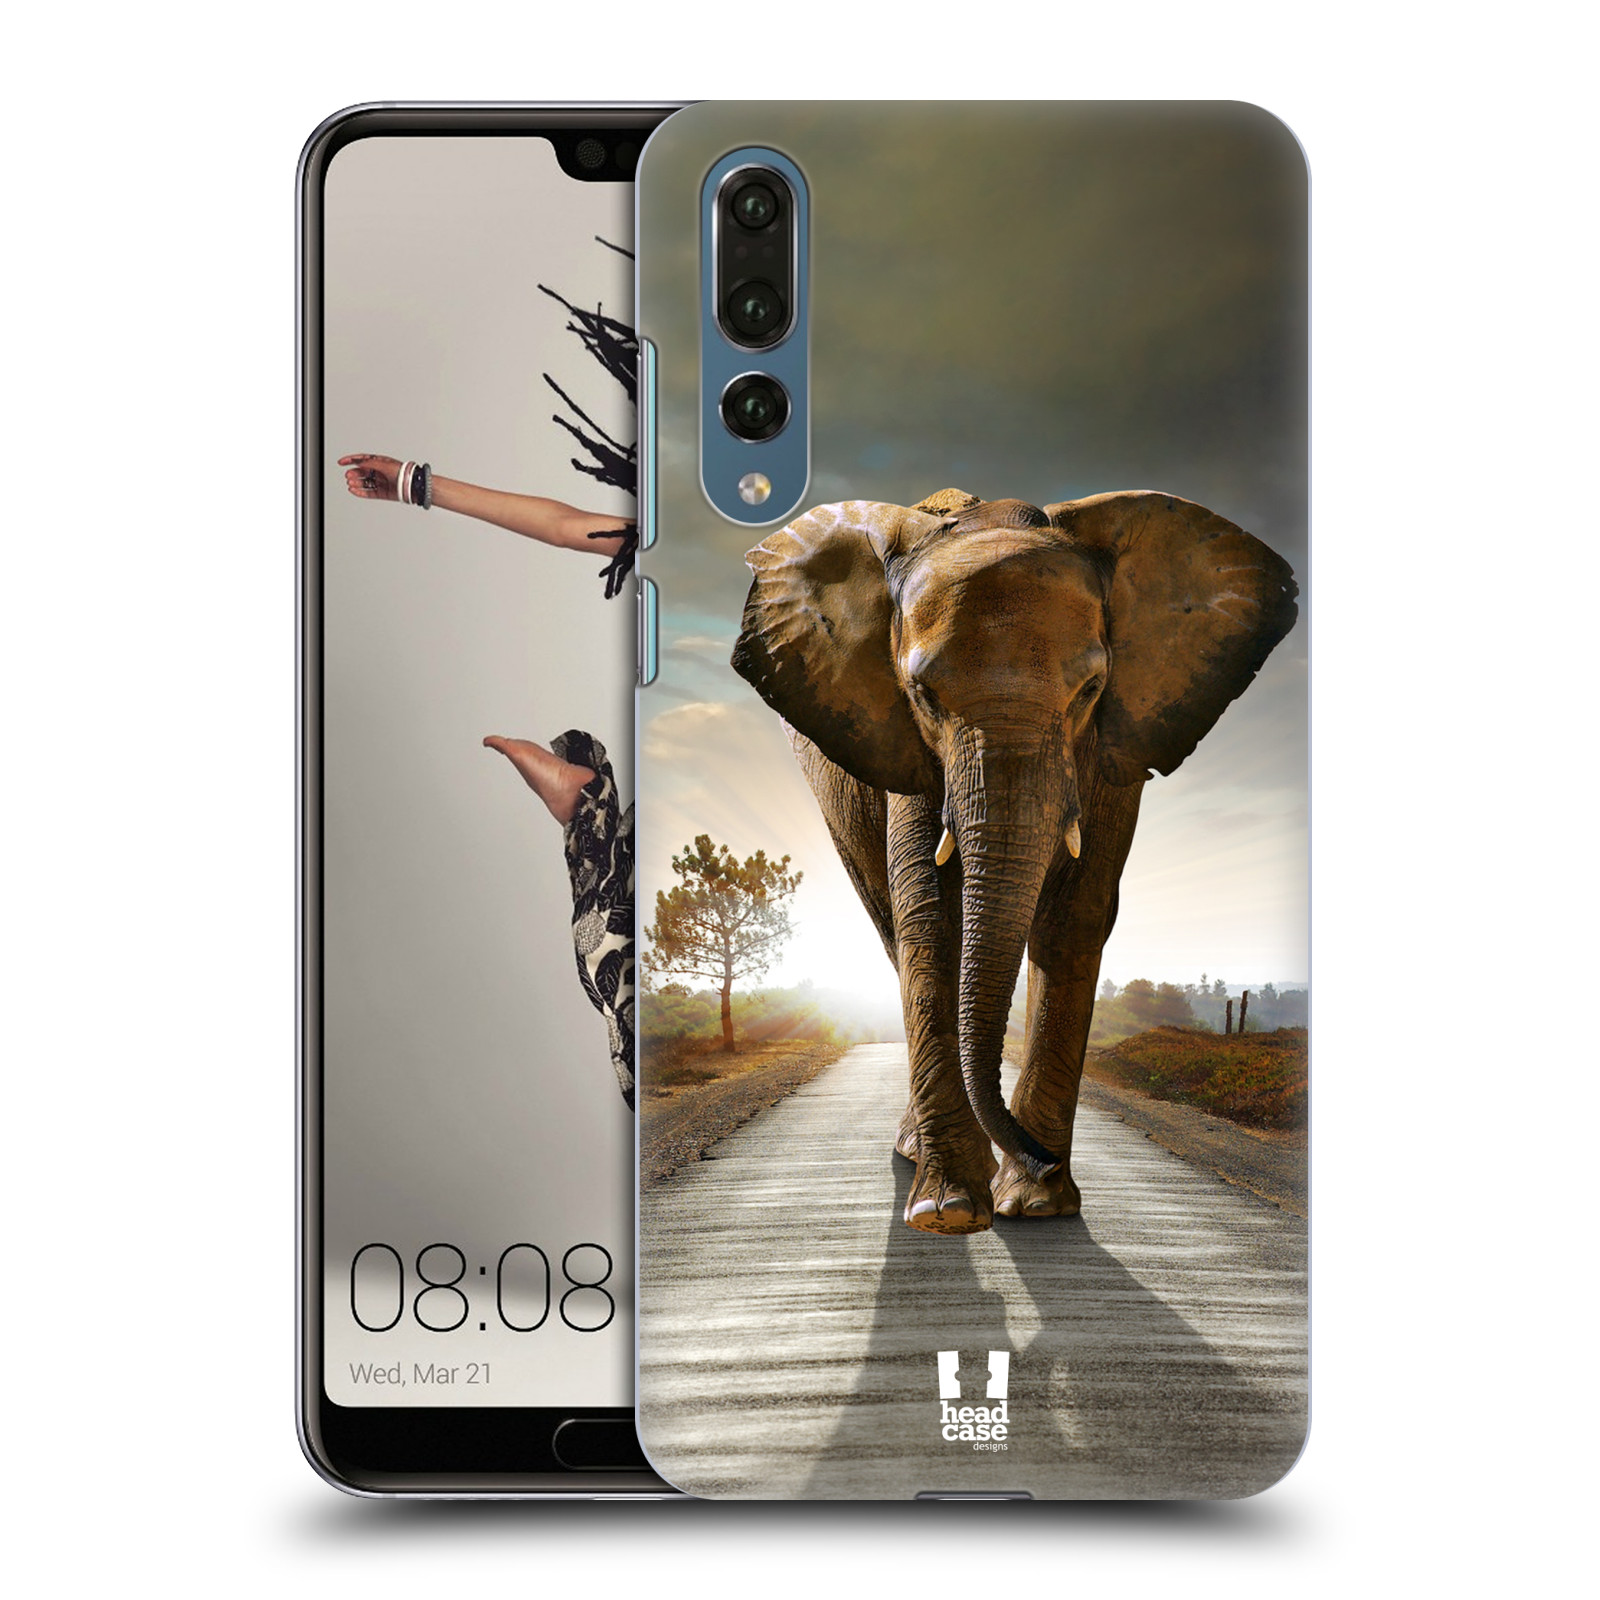 Zadní obal pro mobil Huawei P20 PRO - HEAD CASE - Svět zvířat kráčející slon